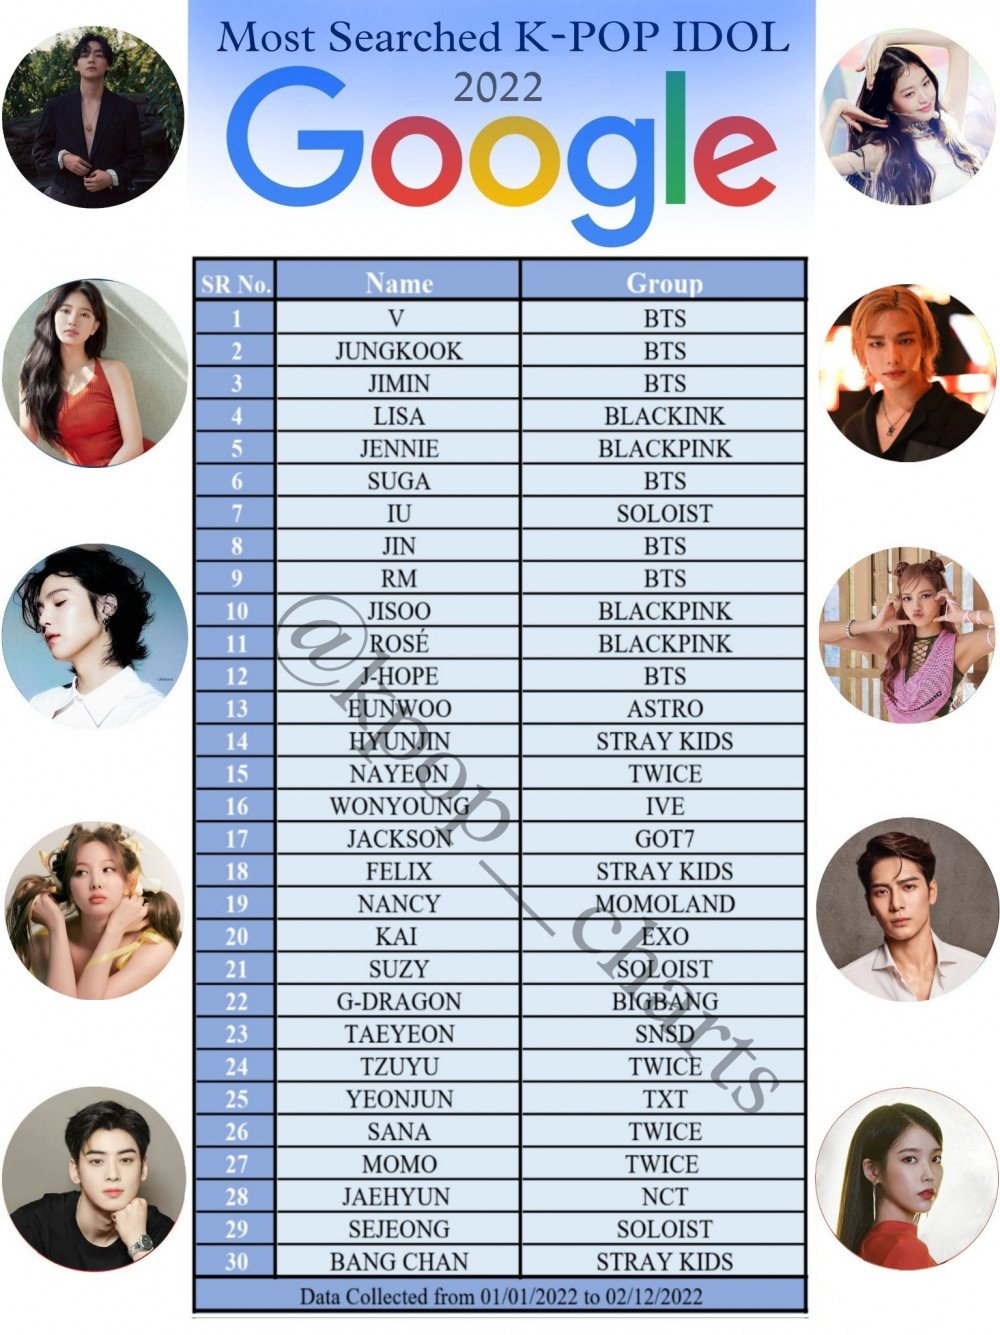 V (BTS) - thần tượng K-pop được tìm kiếm nhiều nhất trên Google toàn cầu 2022 - Ảnh 1.